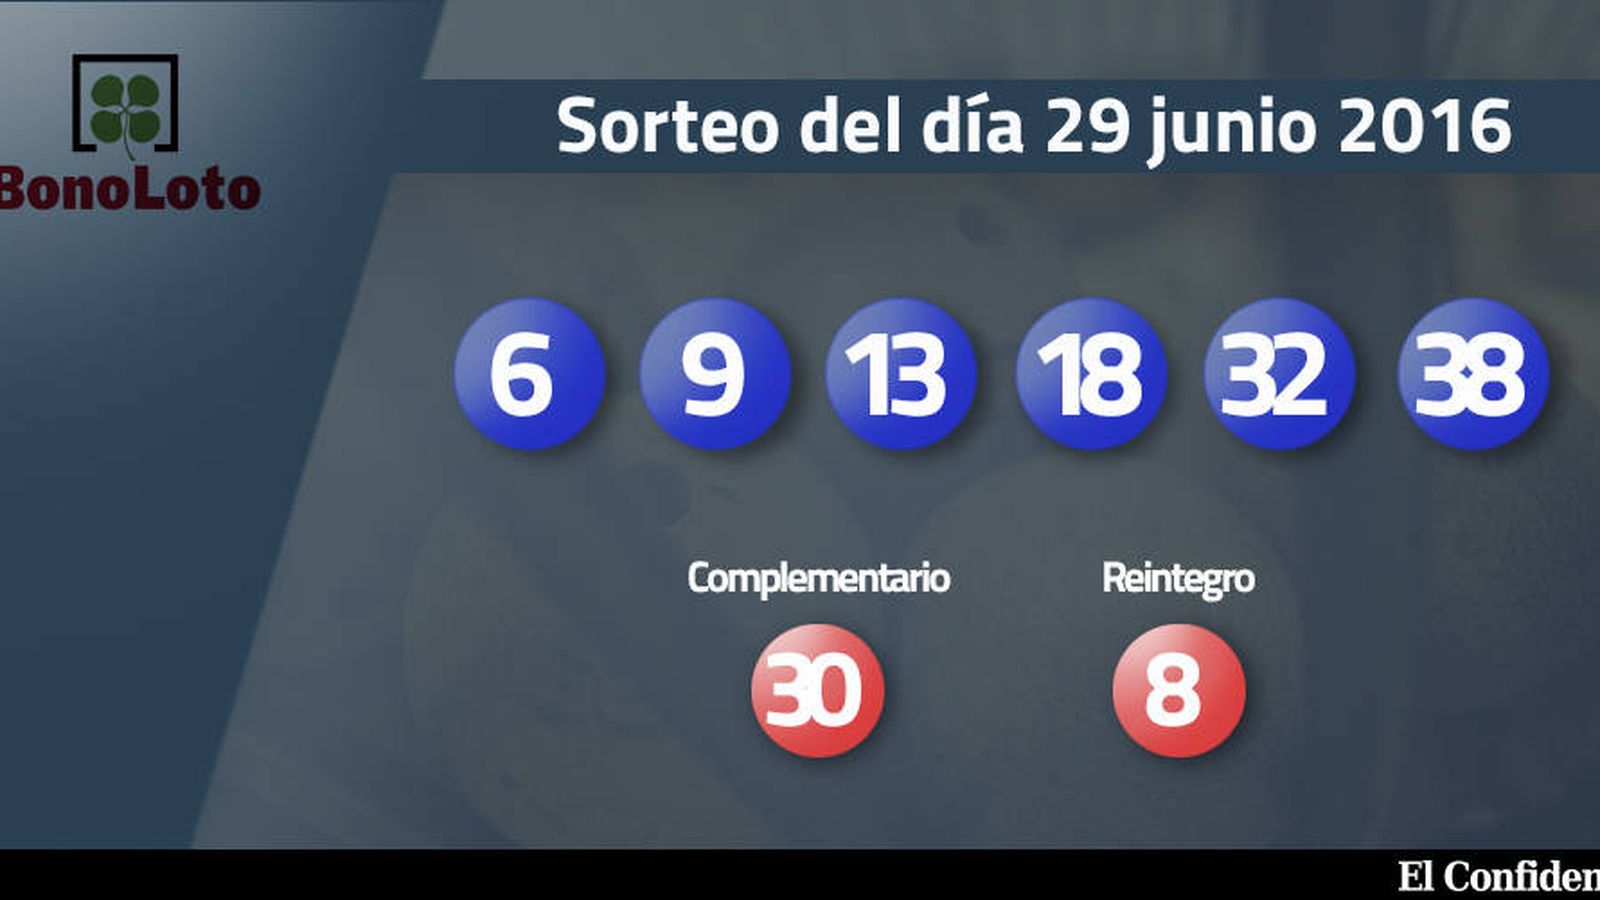 Foto: Resultados del sorteo de la Bonoloto del 29 junio 2016 (EC)